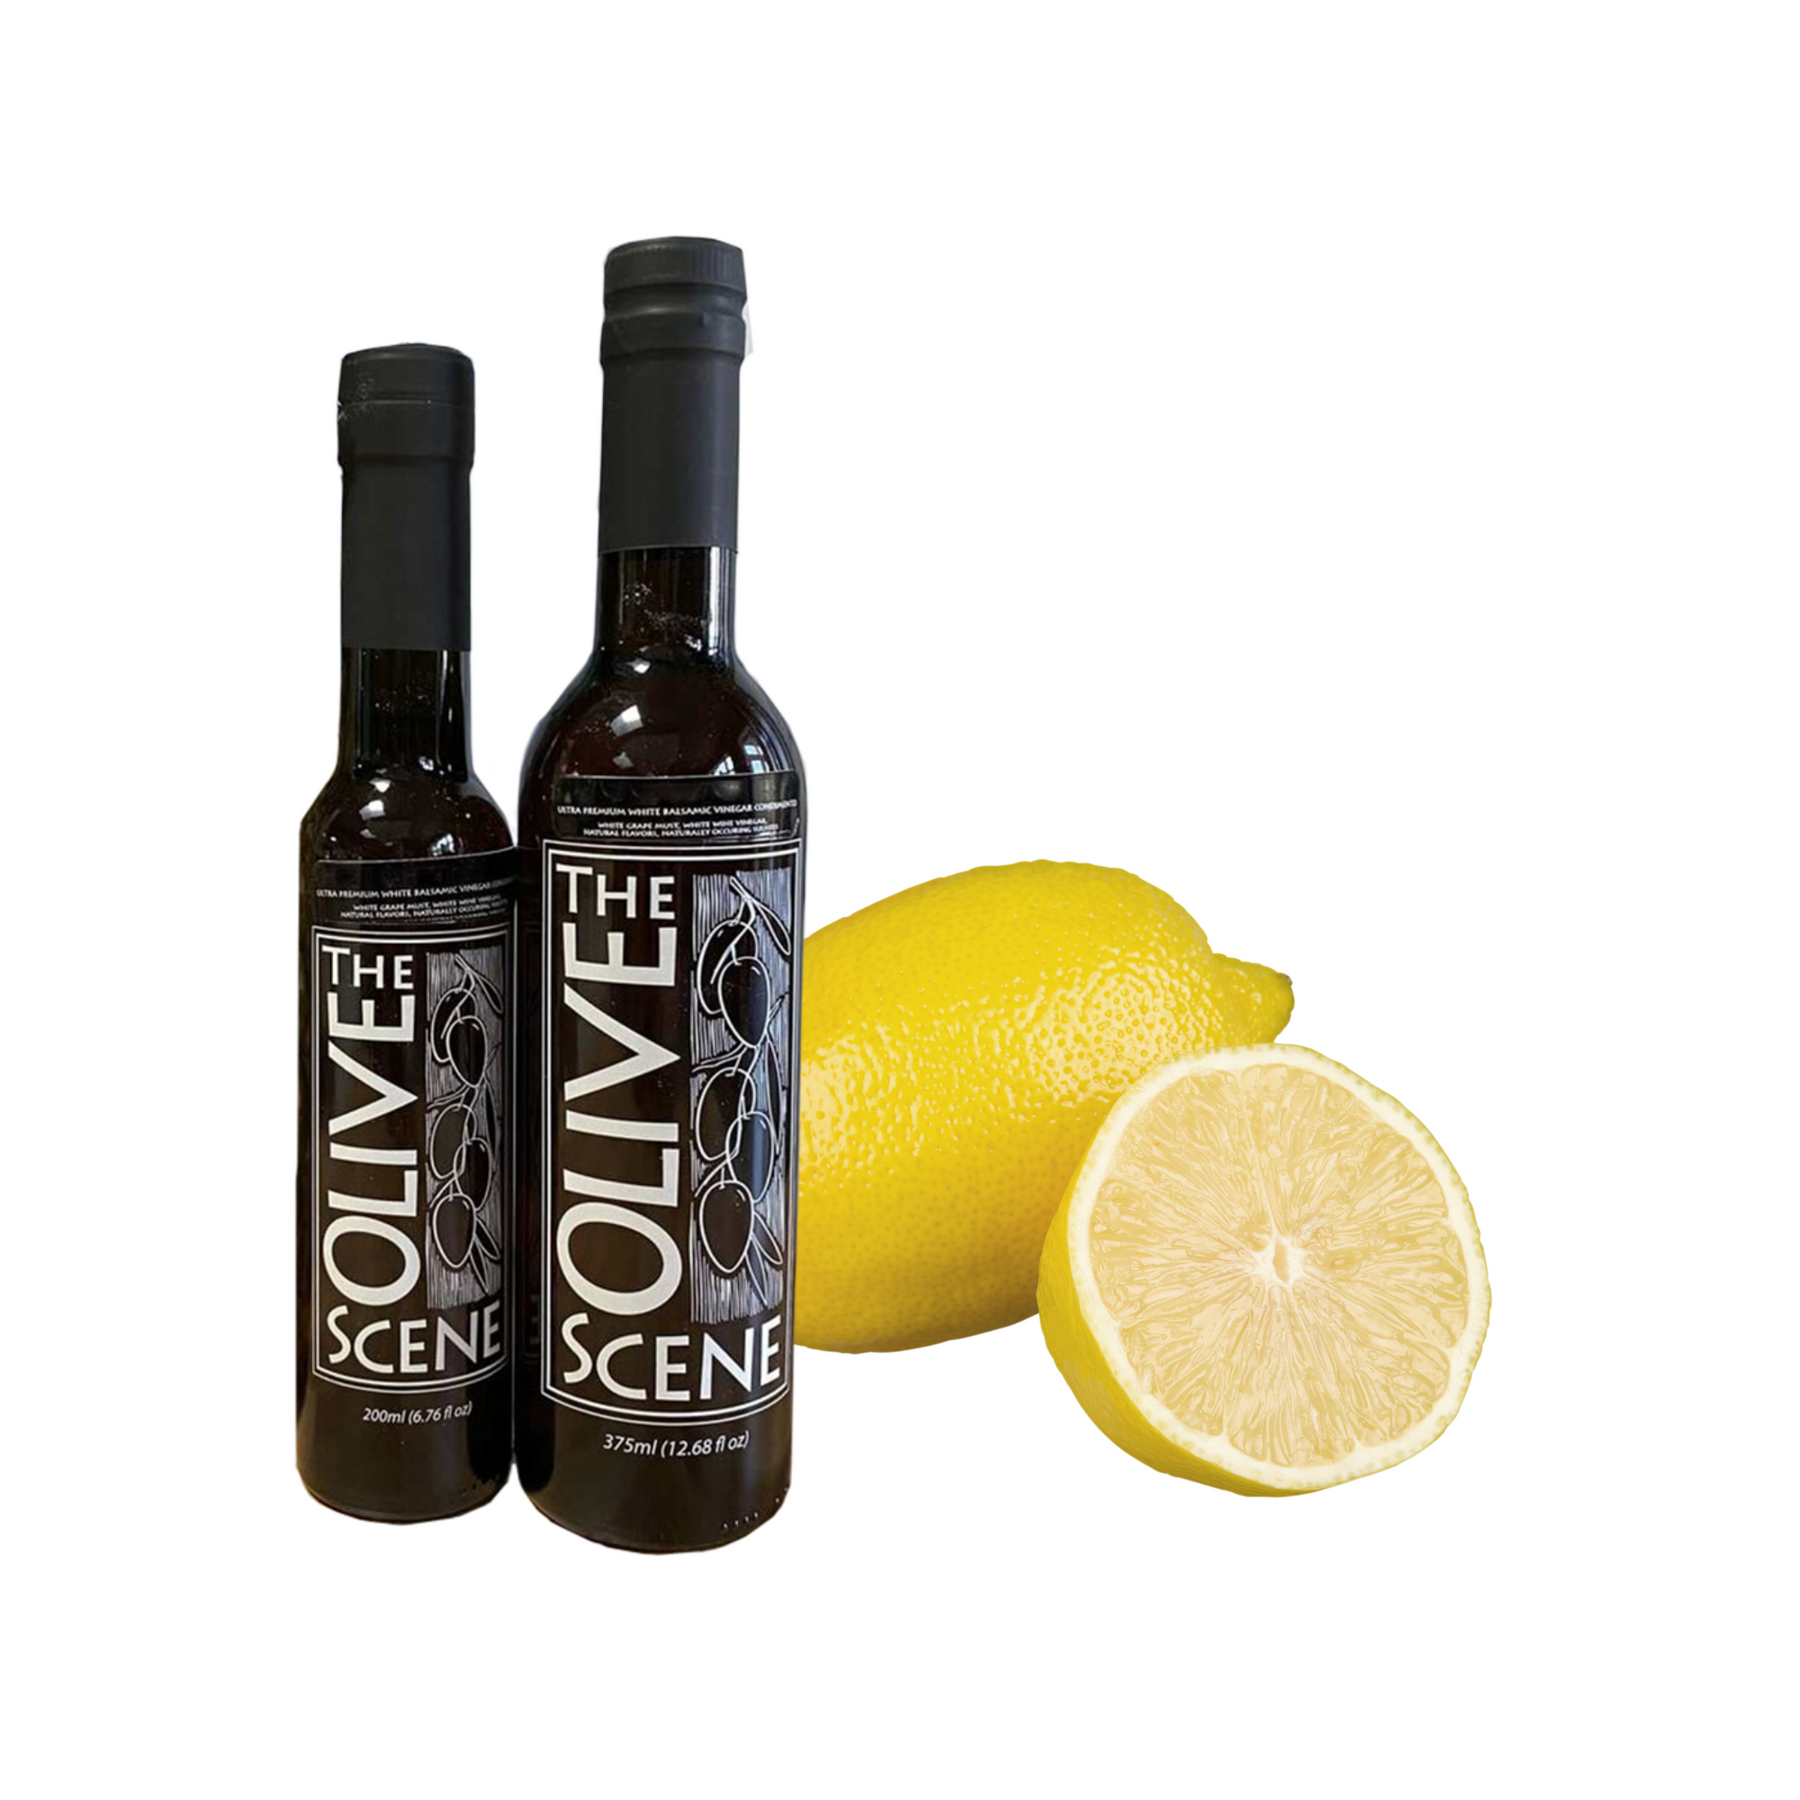 Sicilian Lemon Aged White Balsamic Vinegar – Solvang Olive Press